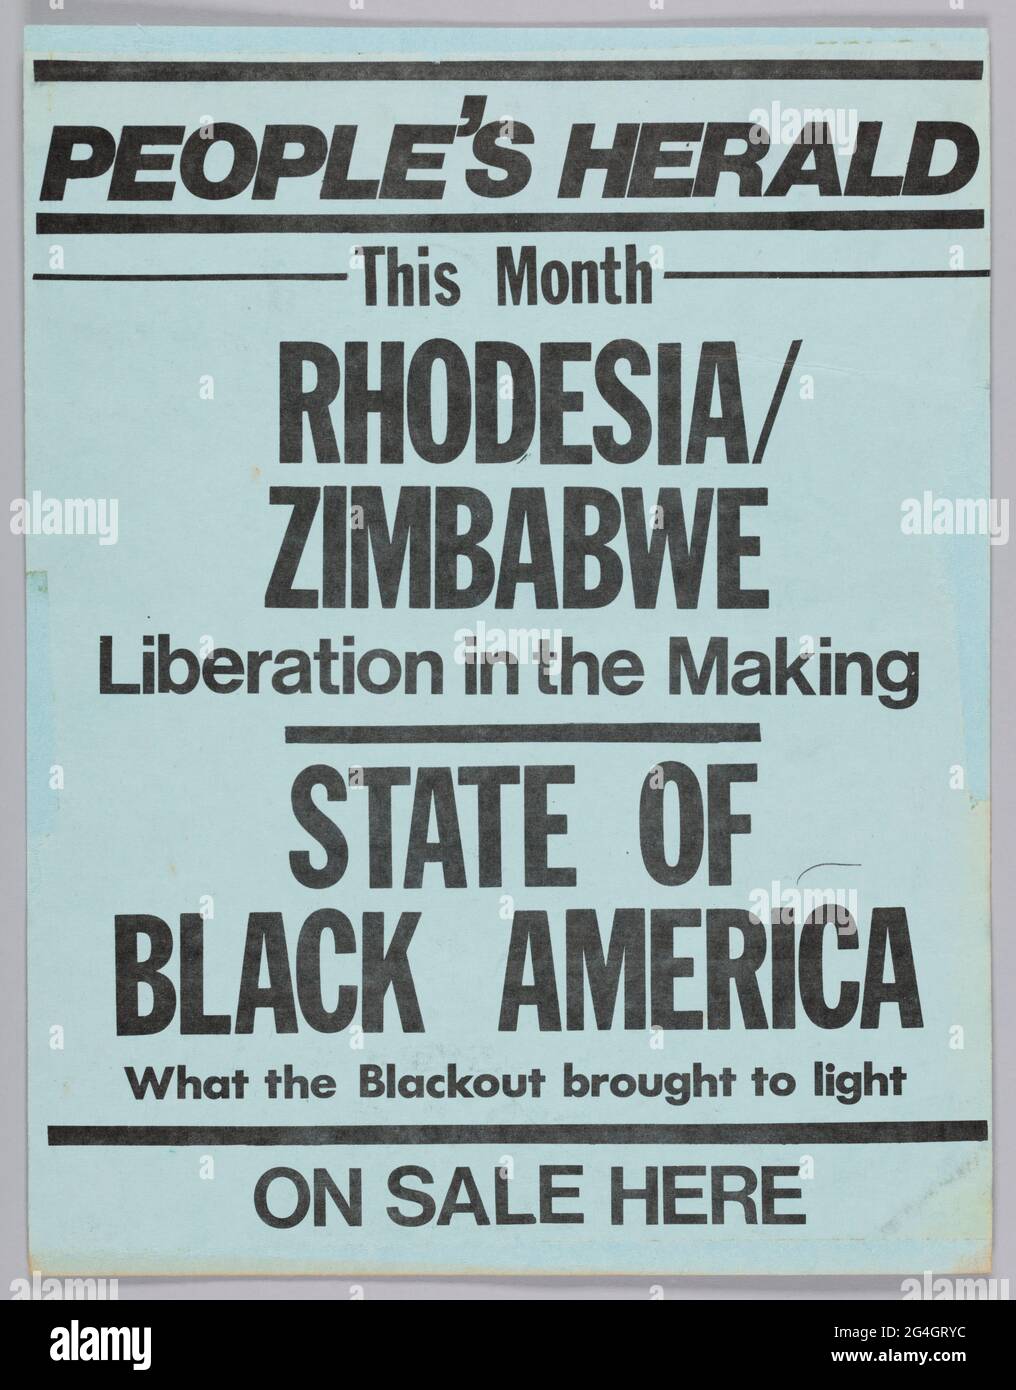 Dieser Flyer wirbt für die September 1977-Ausgabe von The People's Herald. Der Flyer ist blau mit schwarzem Text, der lautet: [PEOPLE'S HERALD / This Month / RHODESIA/ / ZIMBABWE / Liberation in the Making / STATE OF BLACK AMERICA / What the Blackout bring to light / ON SALE HERE]. Auf der anderen Seite des Flyers steht [LEGALISIERTES GLÜCKSSPIEL? / ANDREW / YOUNG: / EIN trojanisches Pferd für Afrika / This Month in / People's Herald]. Stockfoto